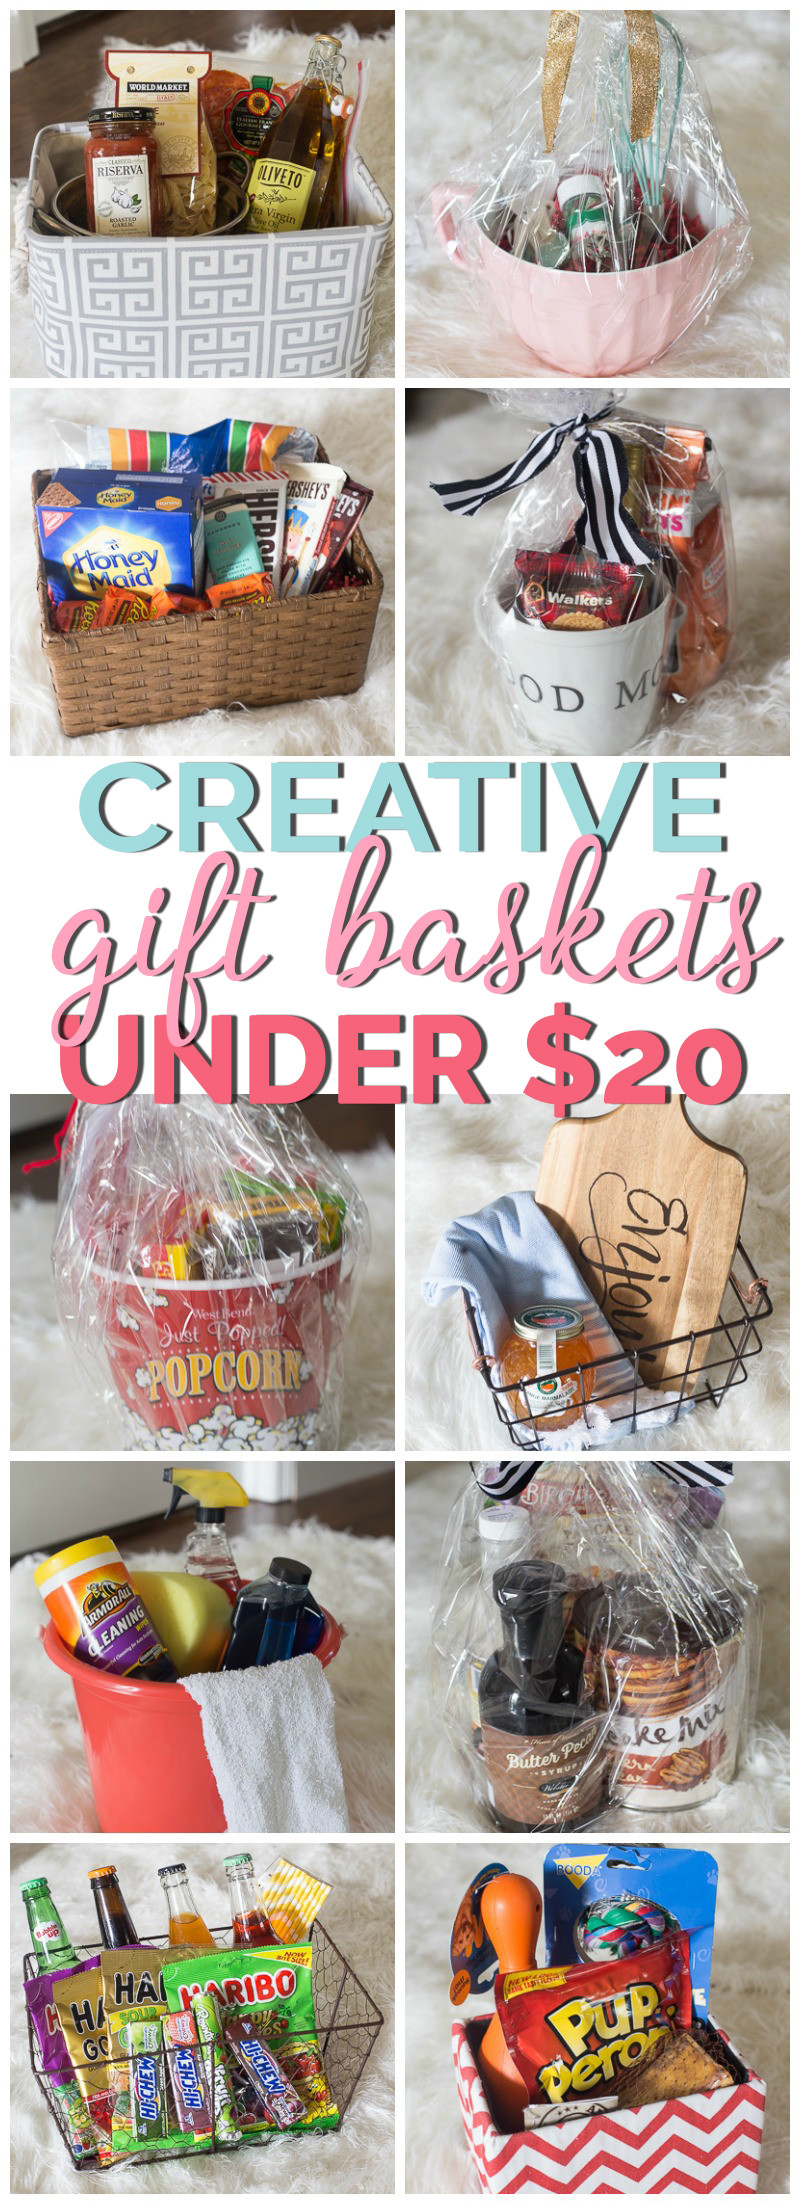 Making Gift Baskets Ideas
 Creative Gift Basket Ideas Under $20